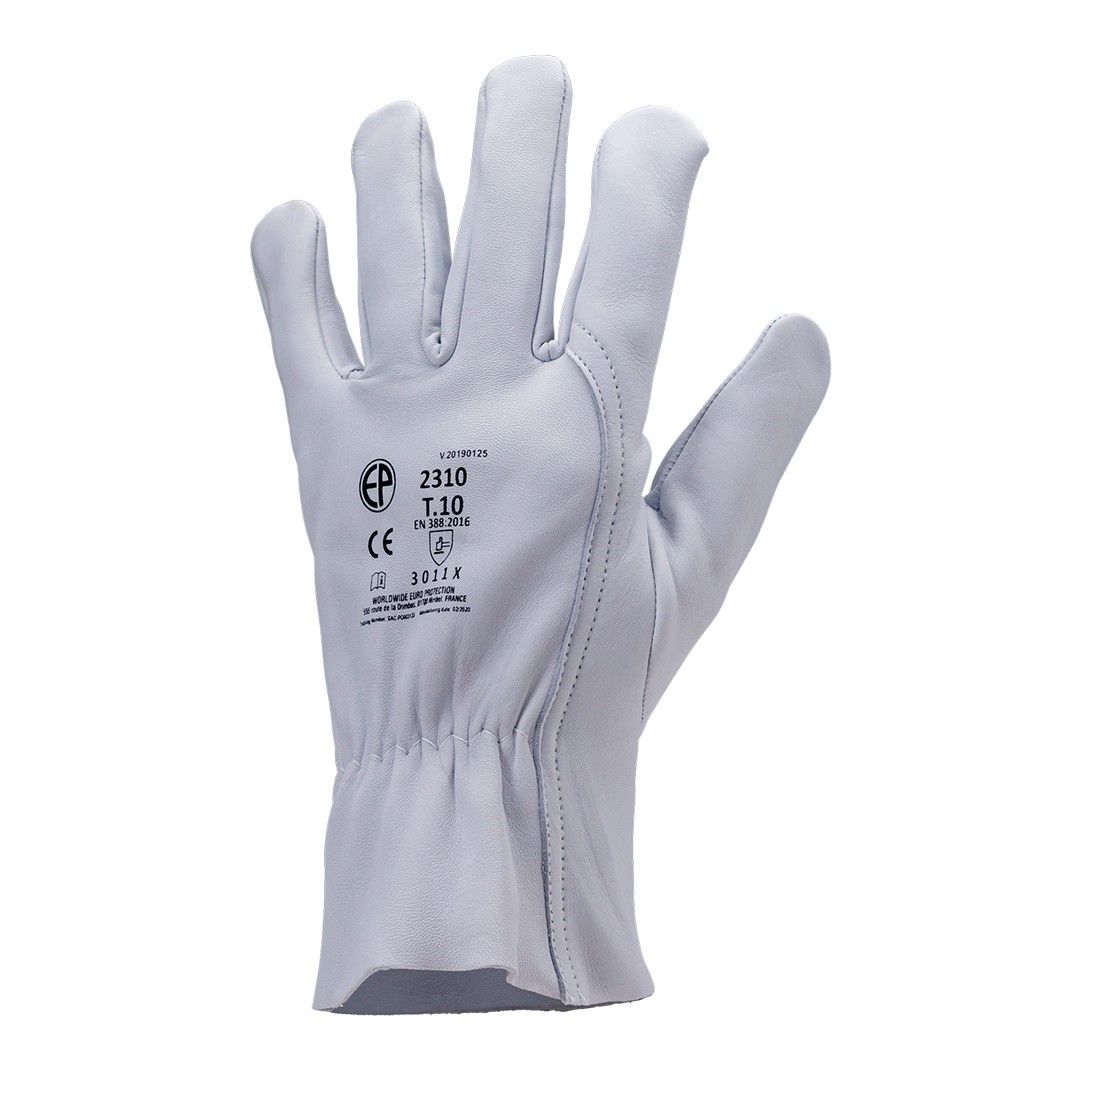 Porte gants en Cordura Force Series pour tout types de gants